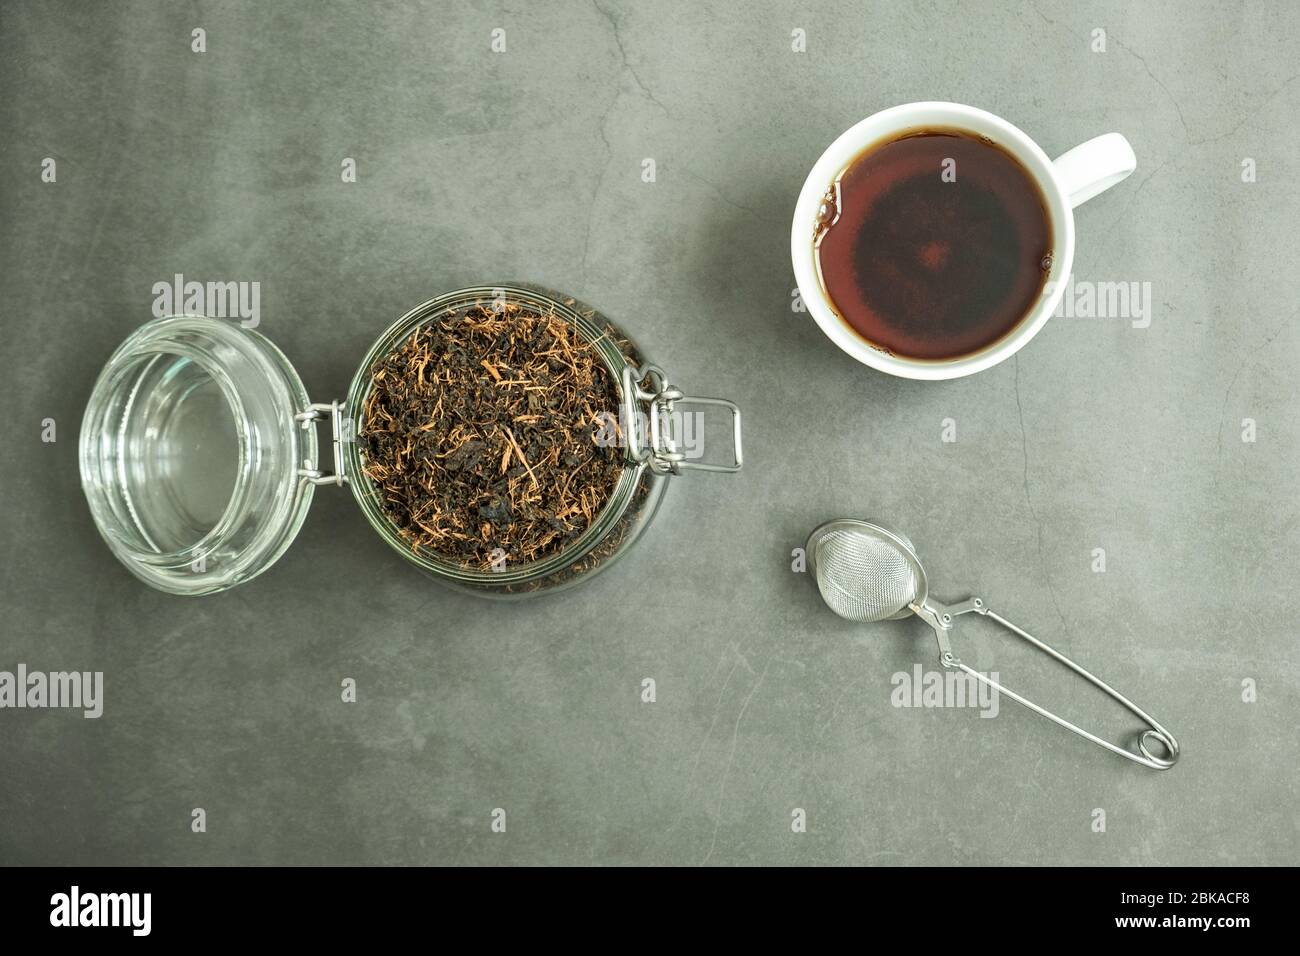 Trockenes schwarzes Teeblatt im Glasgefäß, Sieb und eine frische Tasse Tee auf Betongrund. Traditionelles, gesundes und biologisches Getränk. Draufsicht, flaches Lay Stockfoto